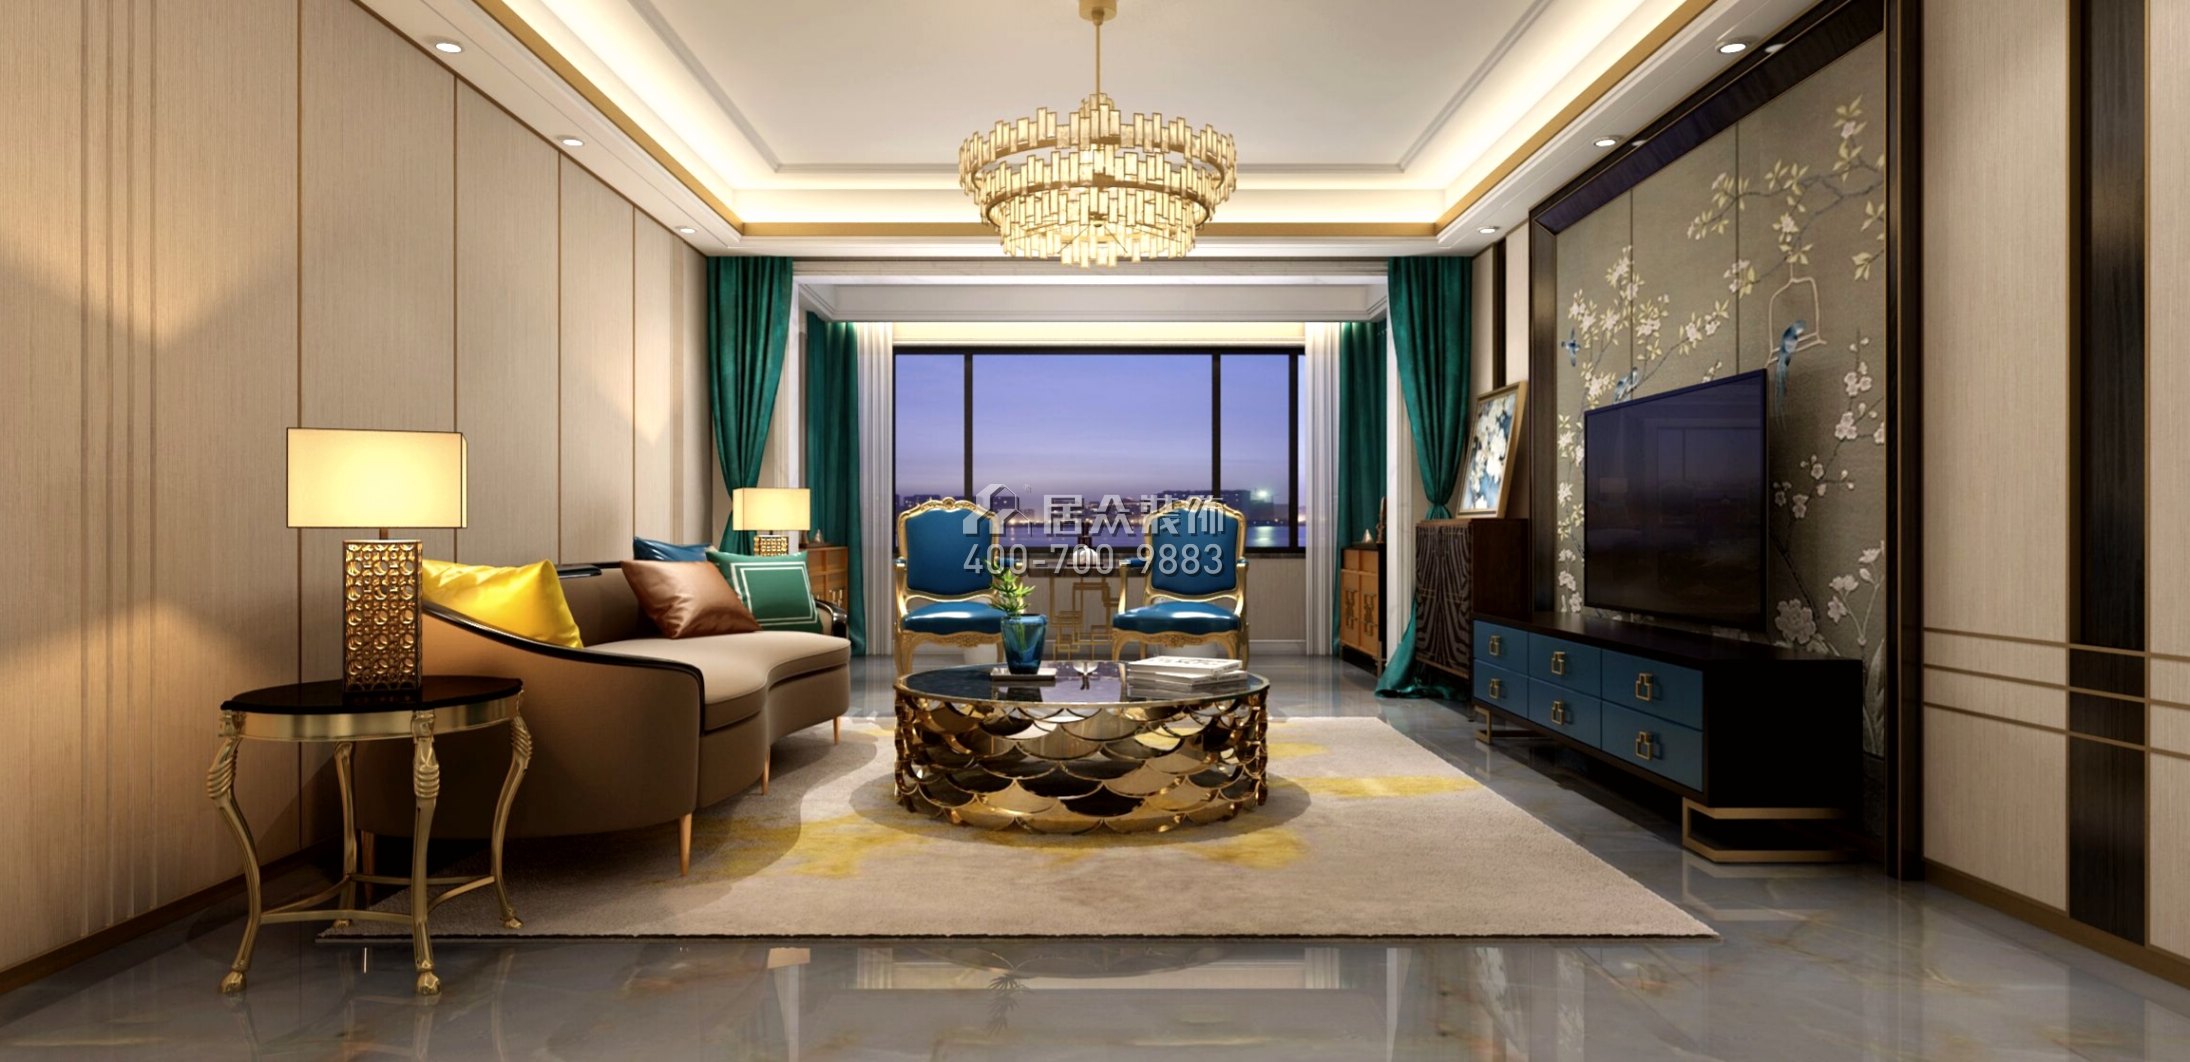 湘江一號210平方米混搭風格平層戶型客廳裝修效果圖